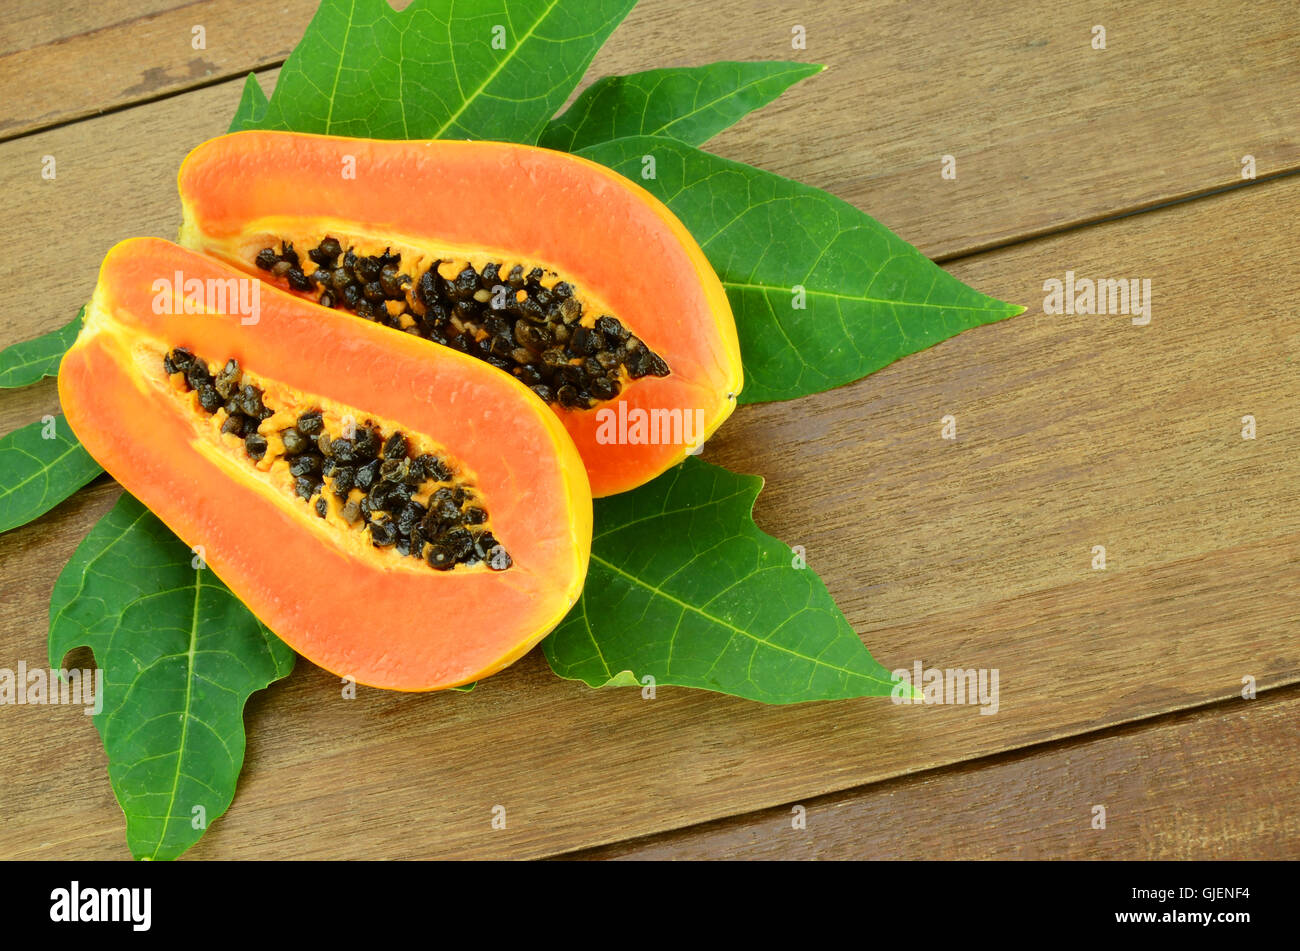 Reife Papaya, Papaya oder Melone (Carica Papaya L) Baum, welche reich an Betakarotin, Vitamin C, Ballaststoffen und Papine Enzym. Stockfoto